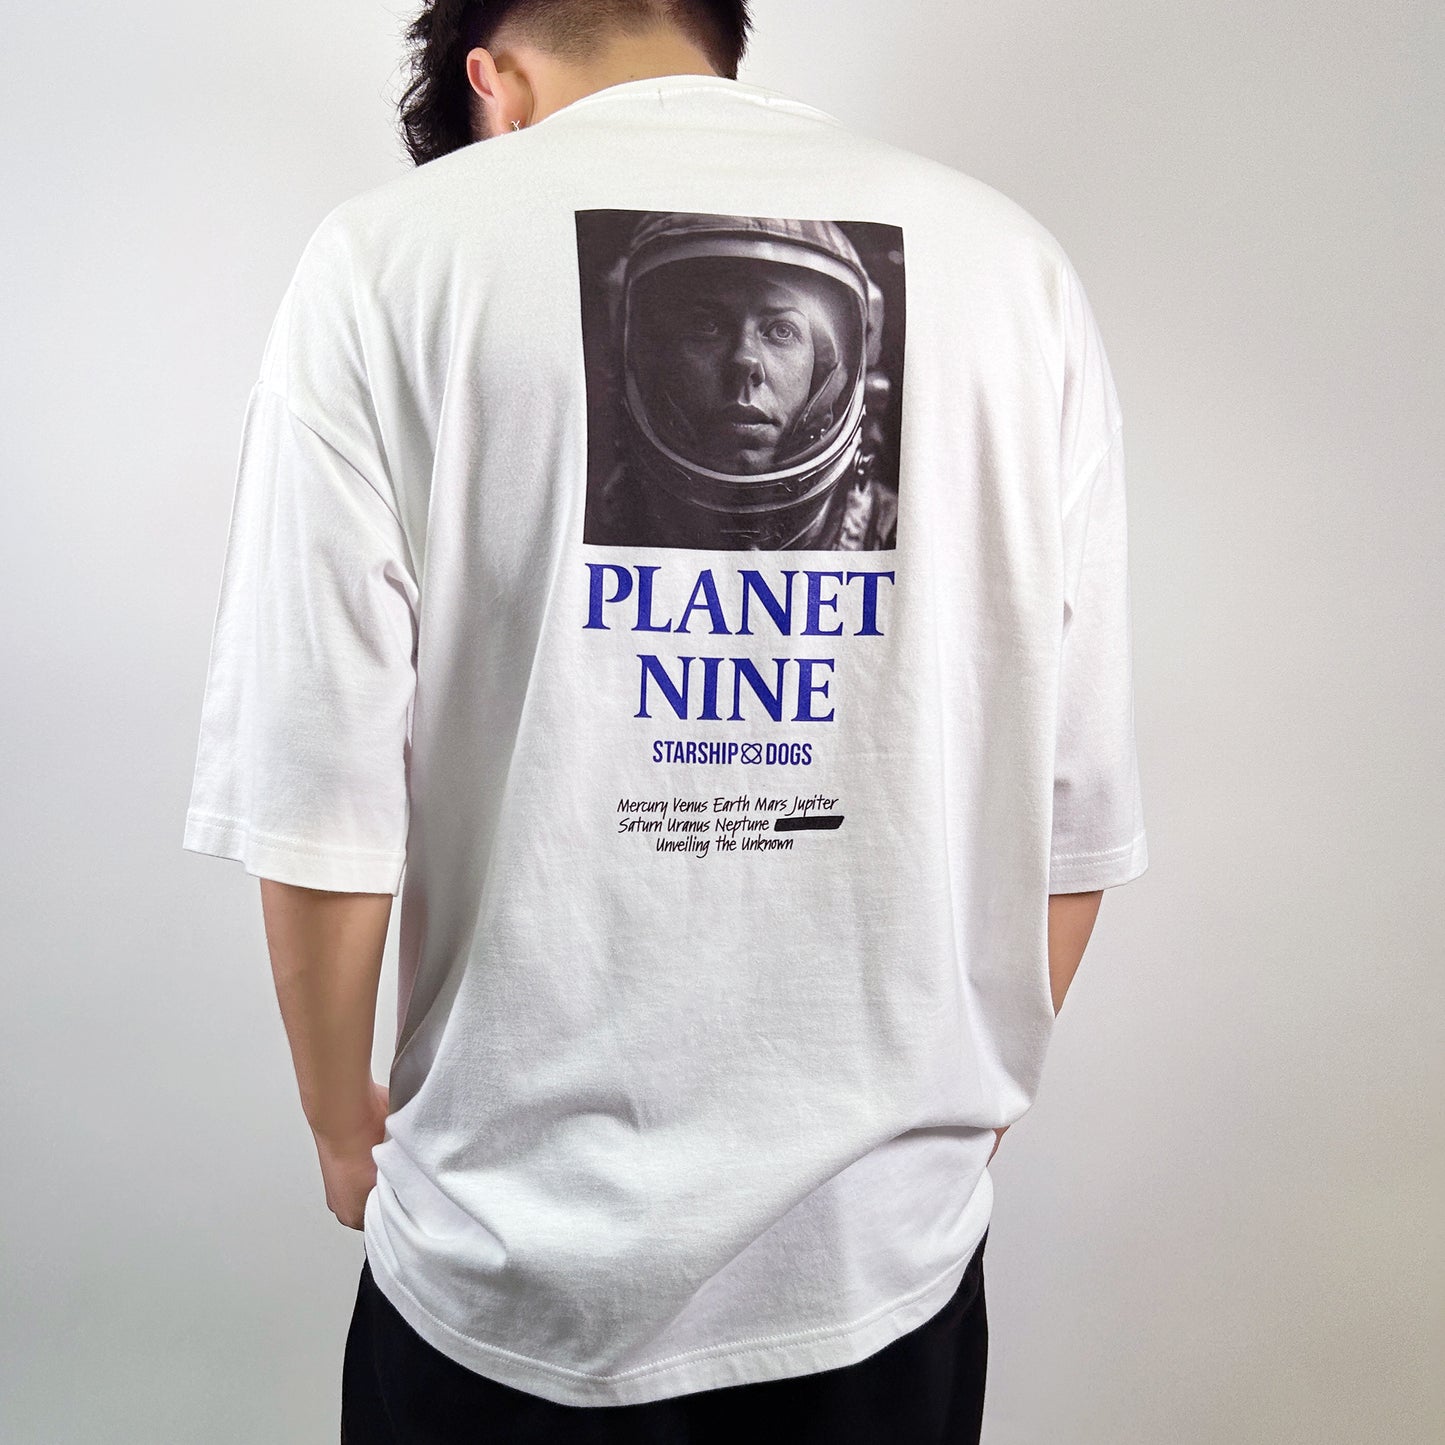 PLANET NINE- Tshirt